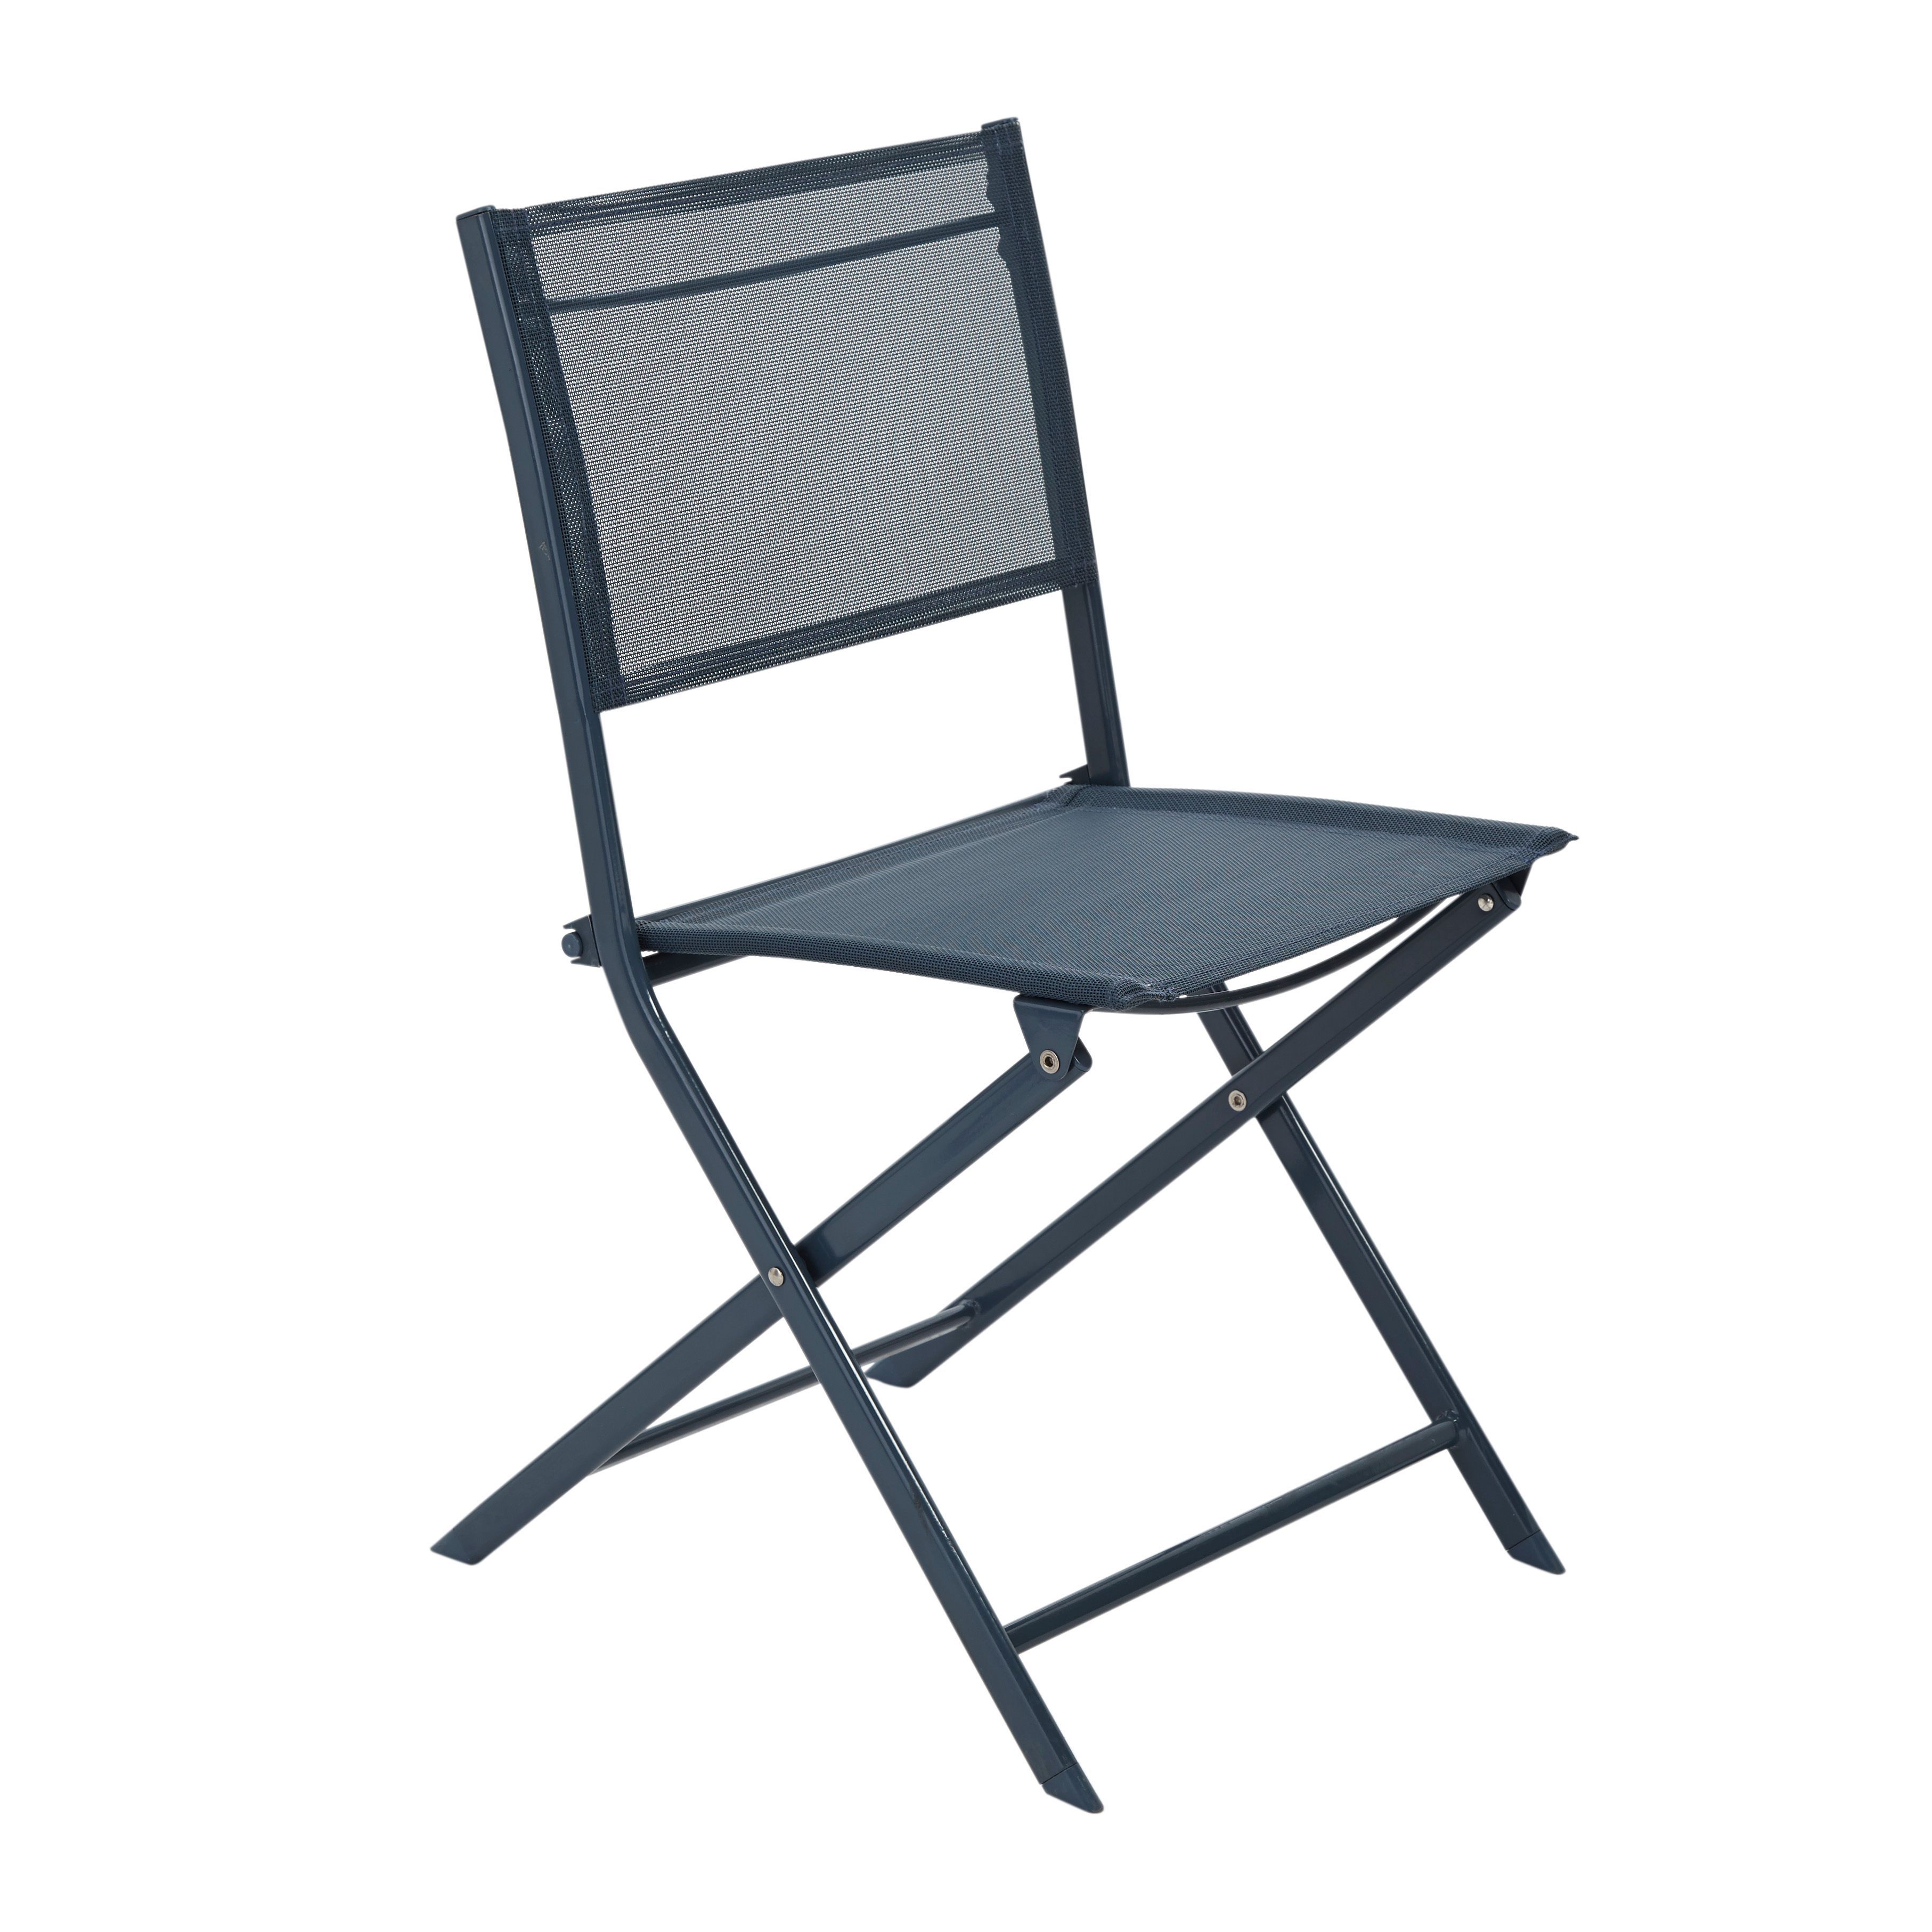 b&q camping chairs